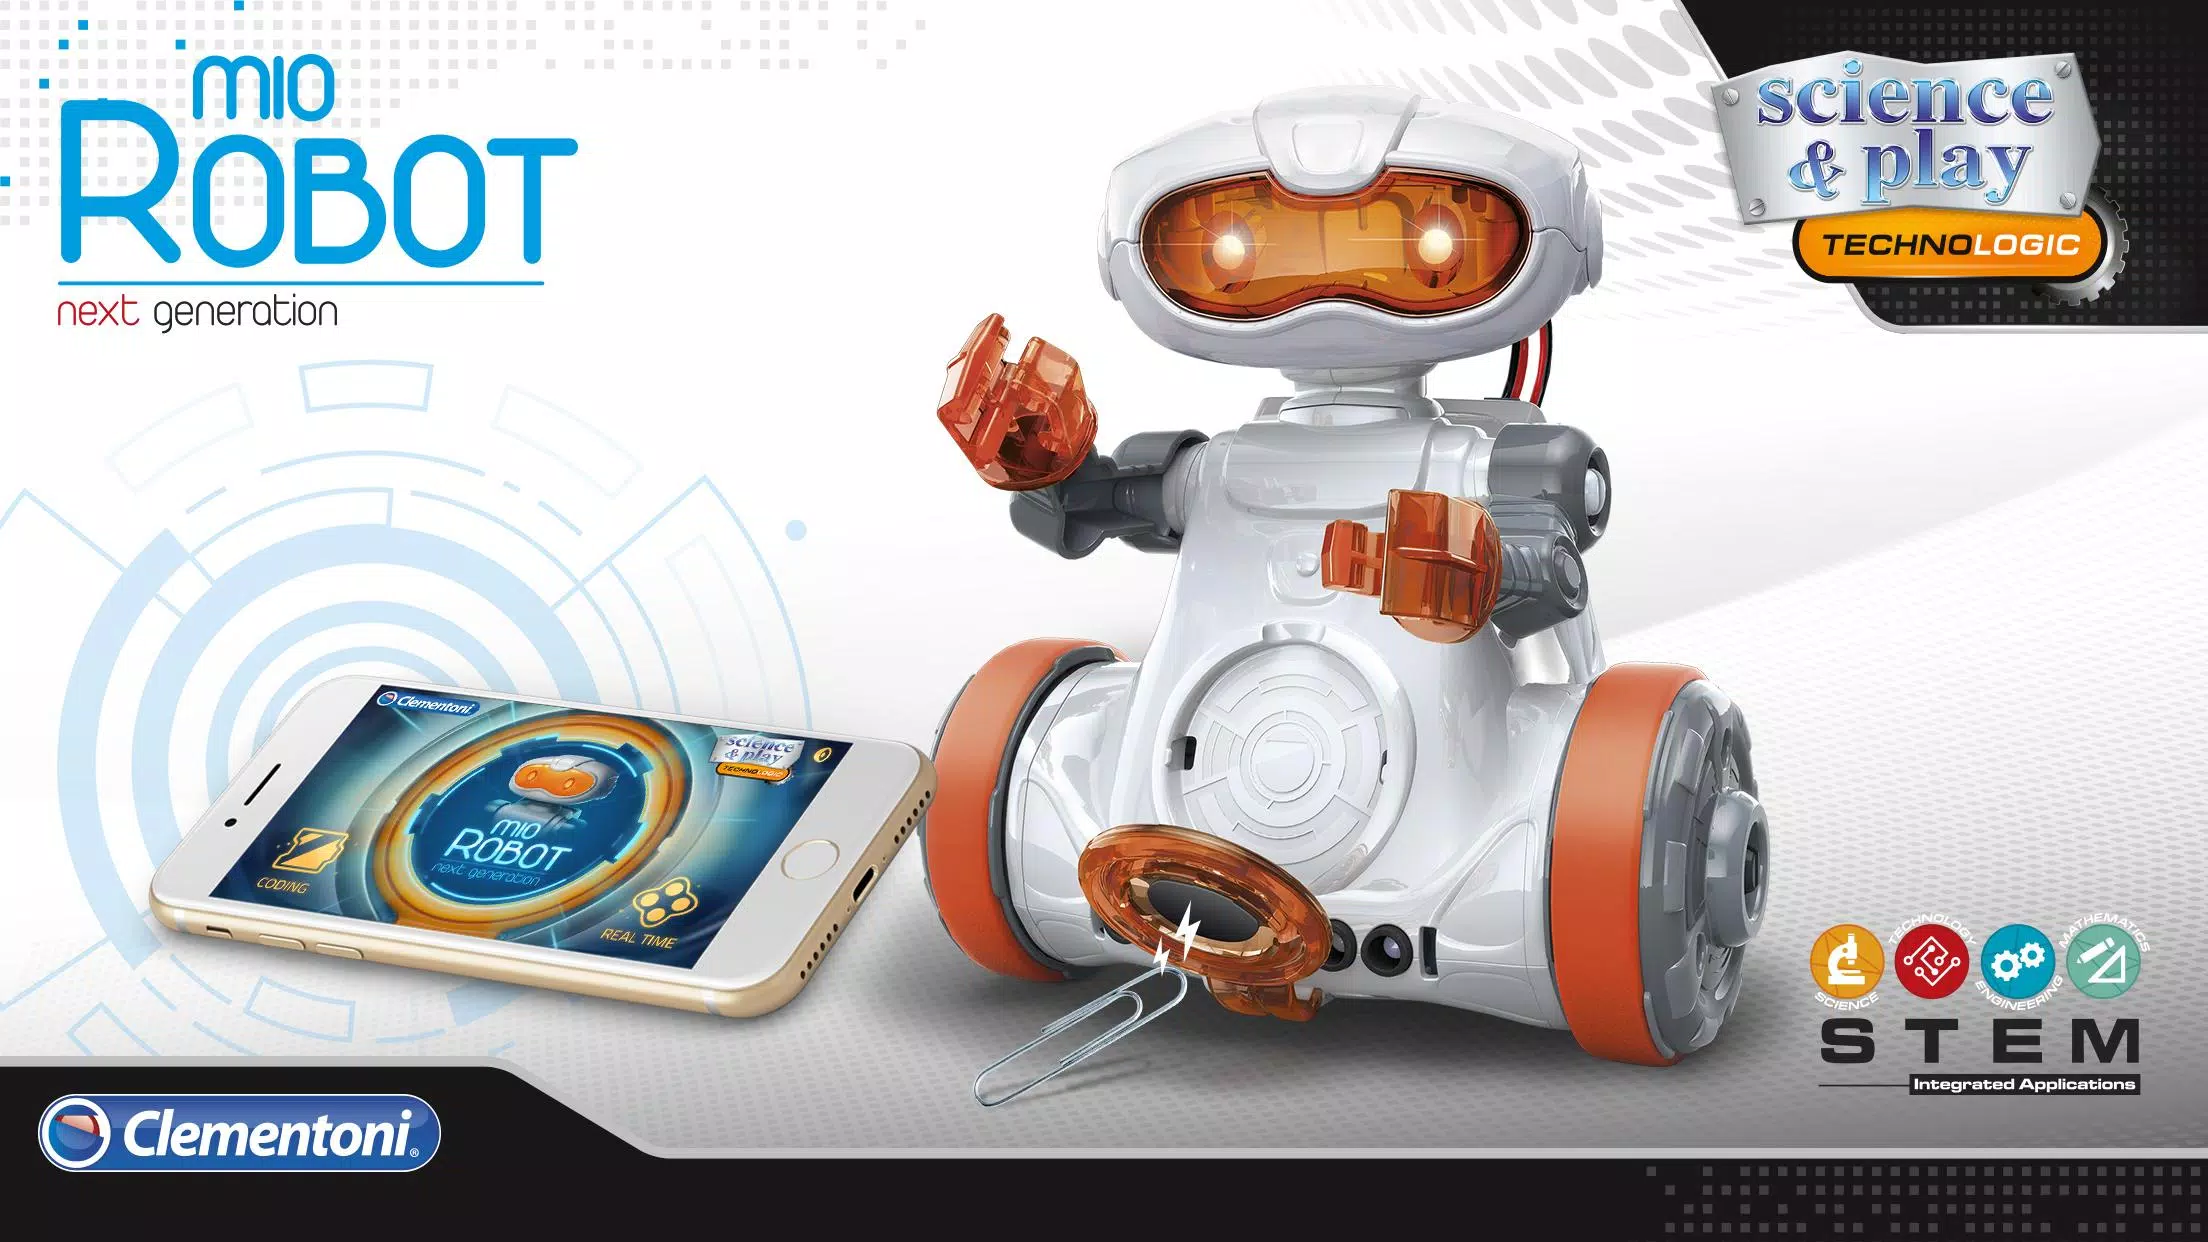 Maak je eigen robot for Android - APK Download